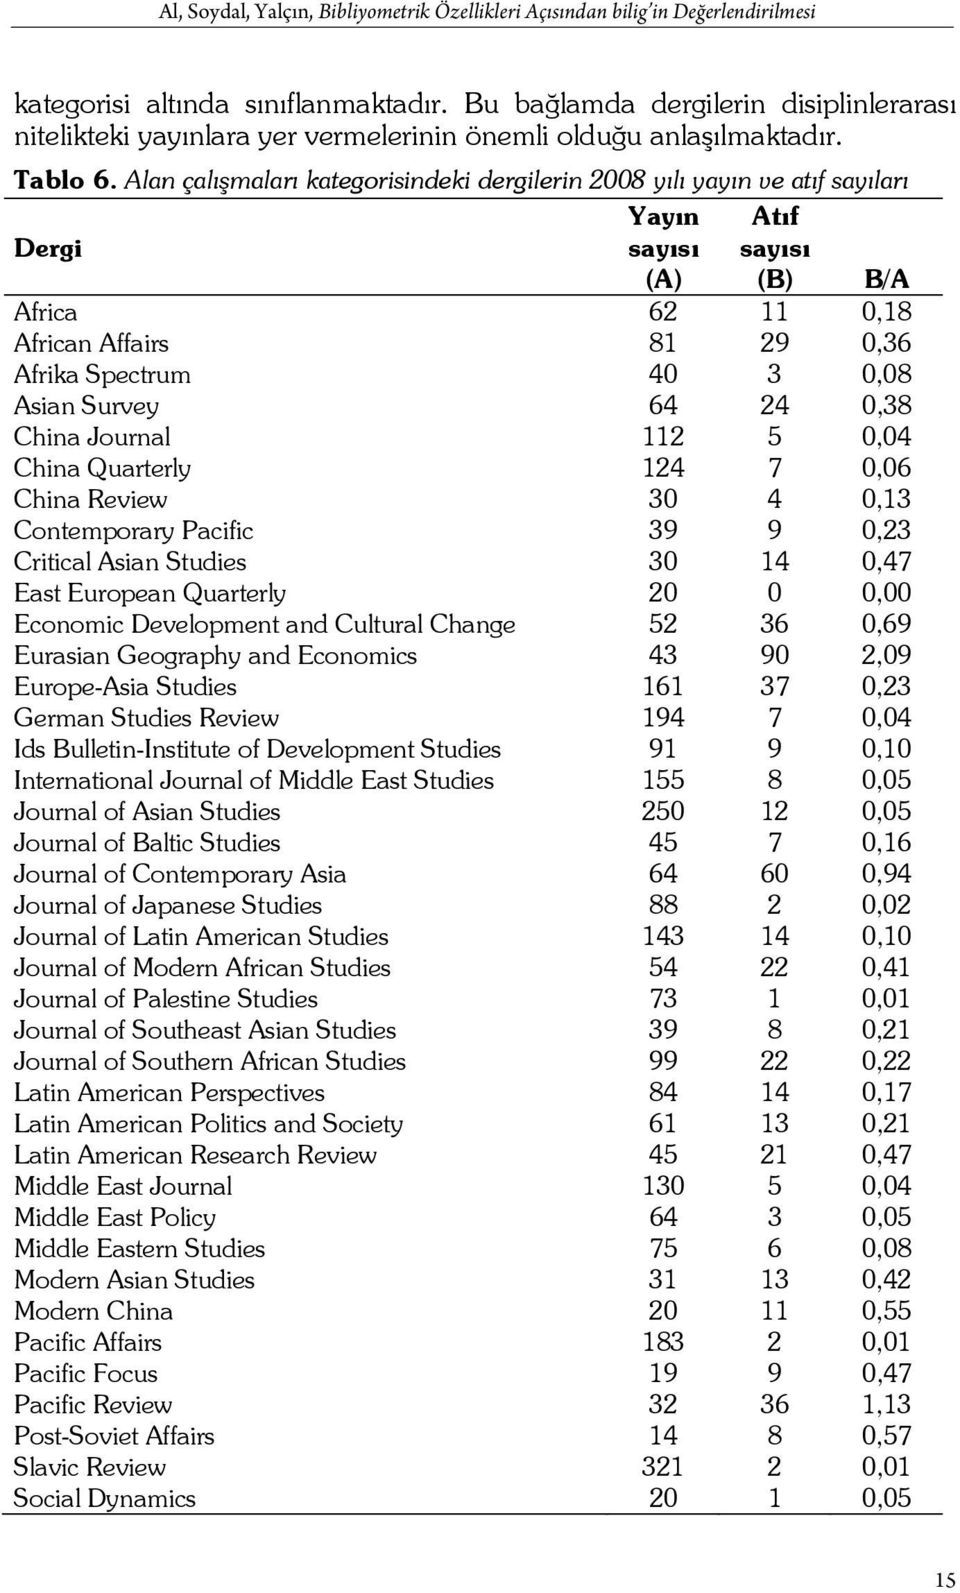 Alan çalışmaları kategorisindeki dergilerin 2008 yılı yayın ve atıf sayıları Dergi Yayın sayısı Atıf sayısı (A) (B) B/A Africa 62 11 0,18 African Affairs 81 29 0,36 Afrika Spectrum 40 3 0,08 Asian